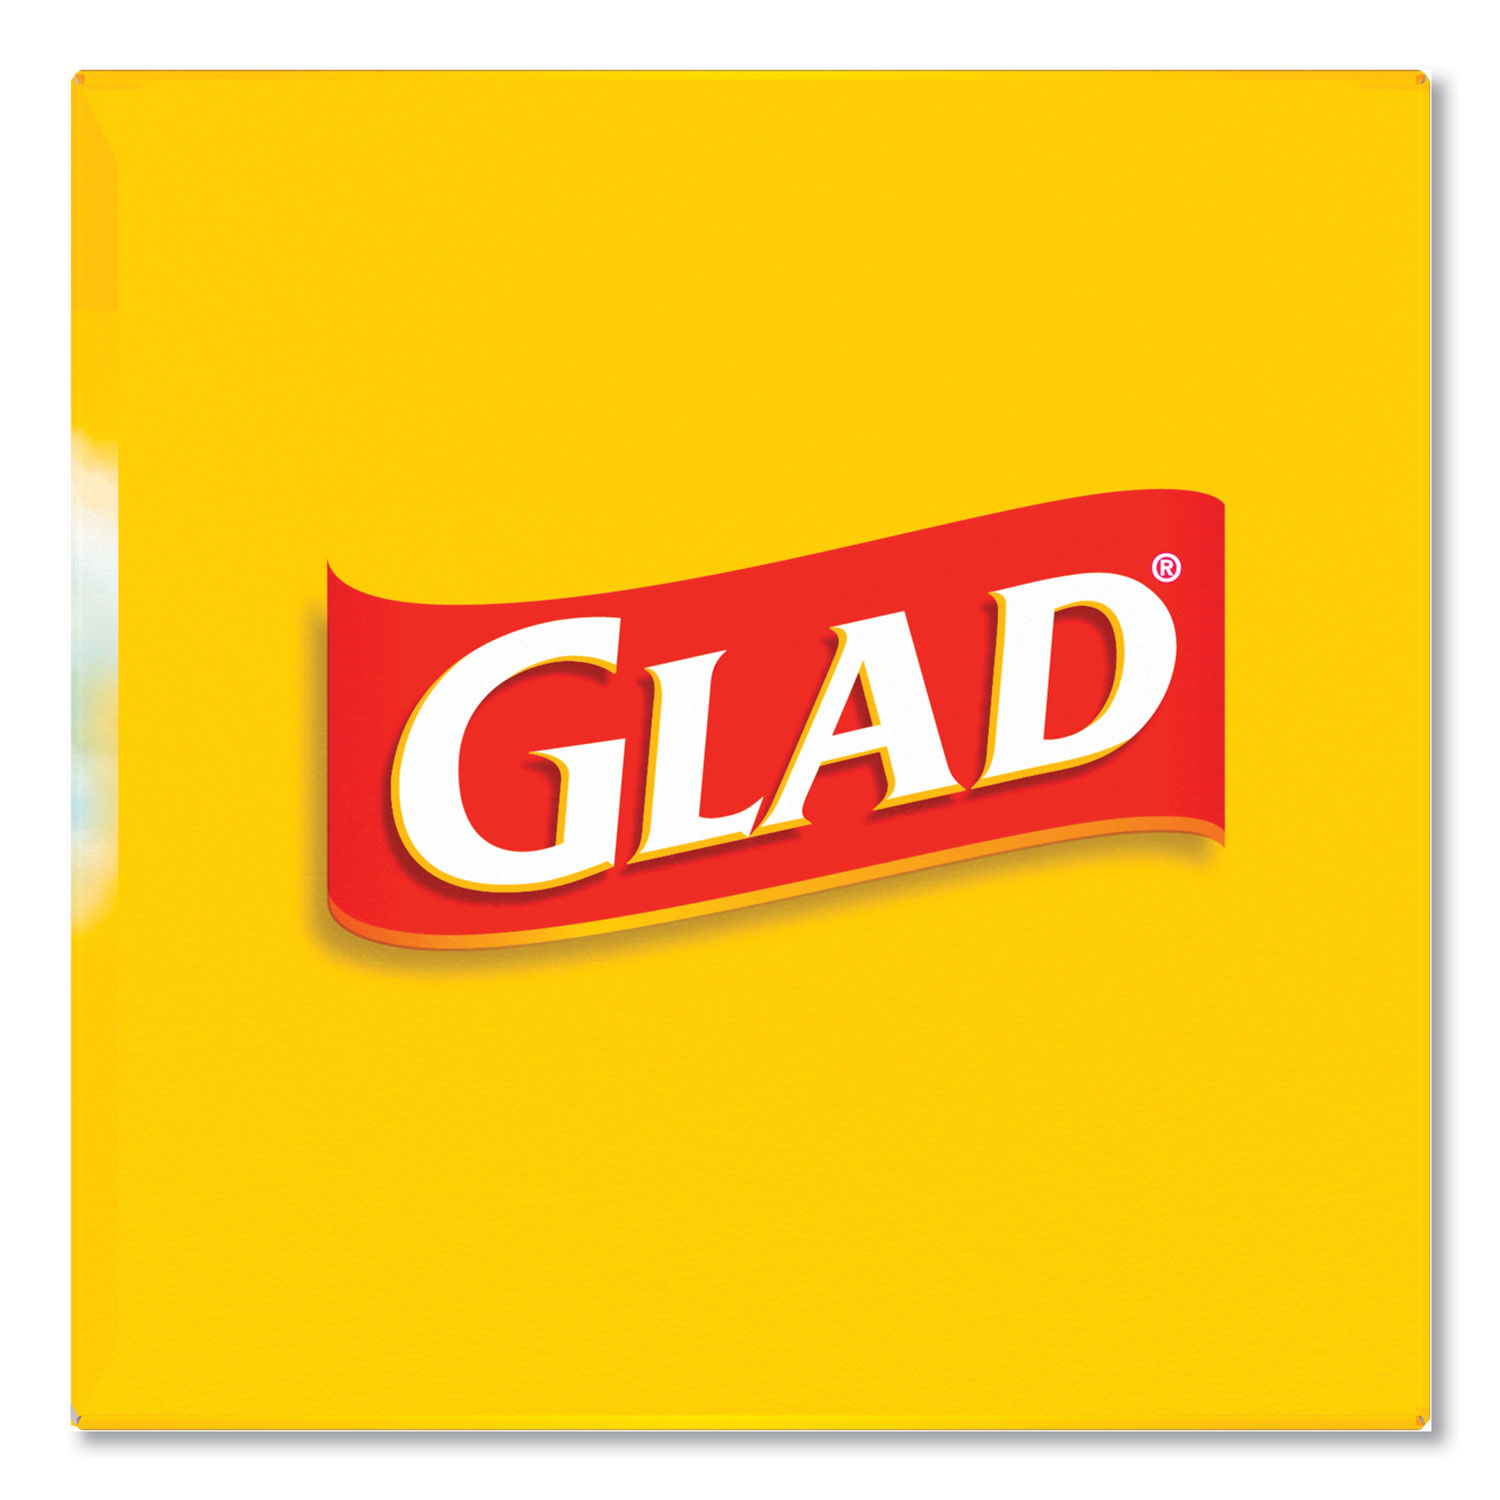 Glad 4-Gal. Small Trash Bags, 156 ct